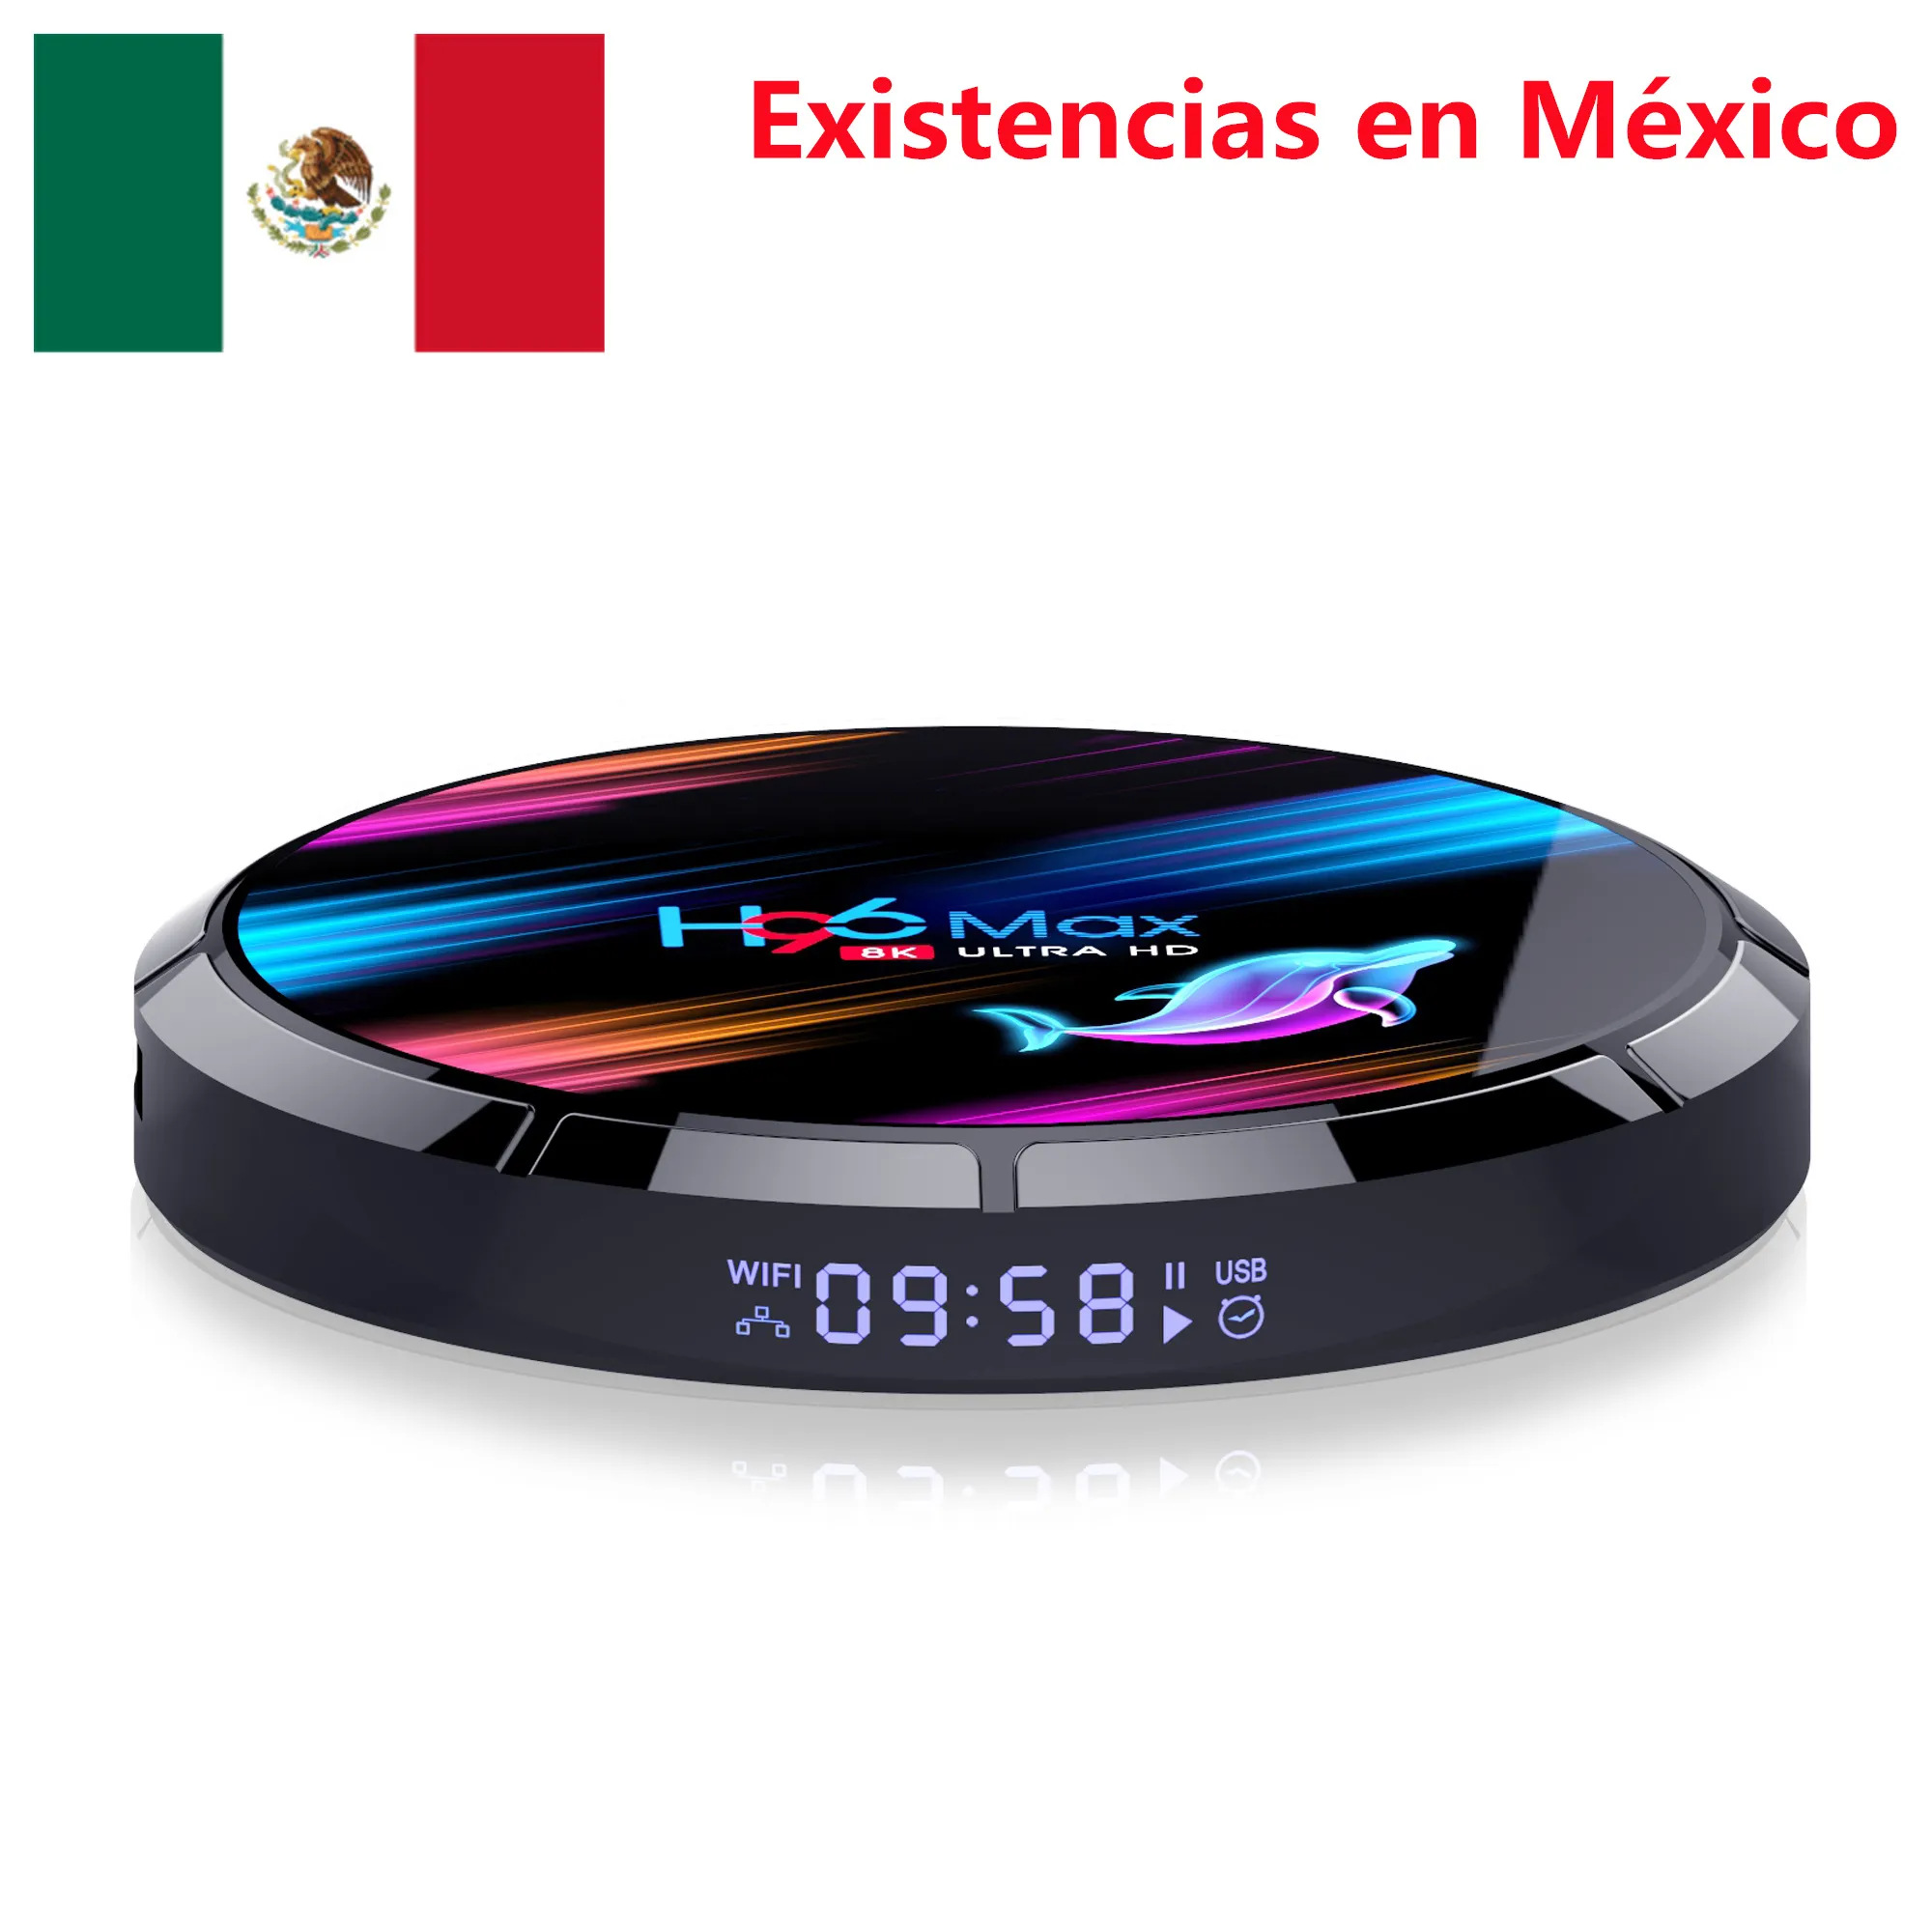 멕시코 주식 H96 MAX X3 TV BOX Android 9.0 Amlogic S905X3 4GB 32GB 2.4G 5G WiFi BT 1000M LAN 8K